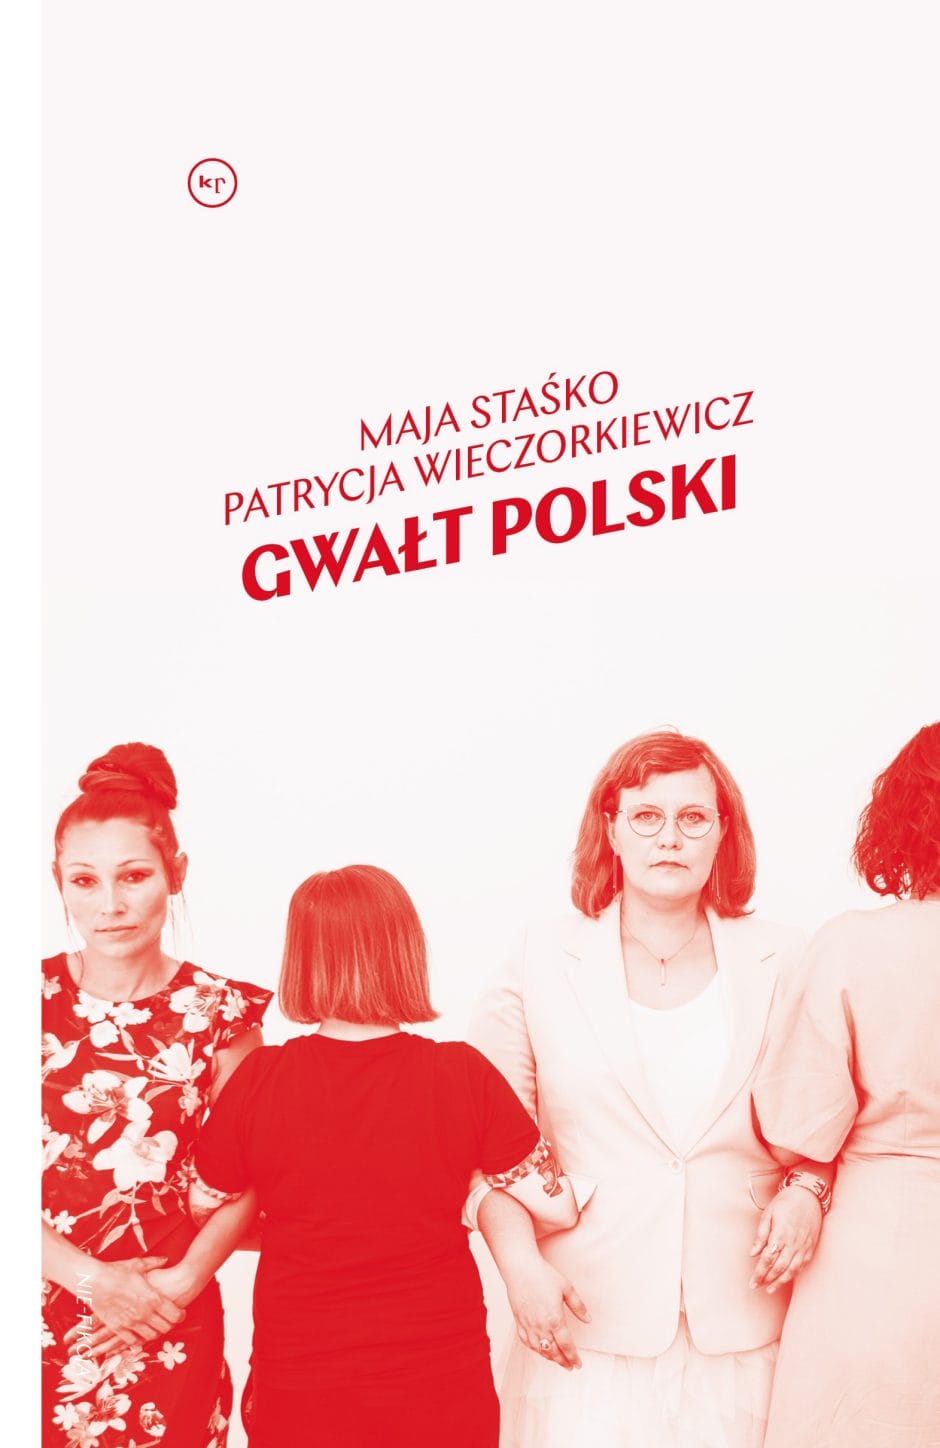 Maja Staśko, Patrycja Wieczorkiewicz: Violul polonez